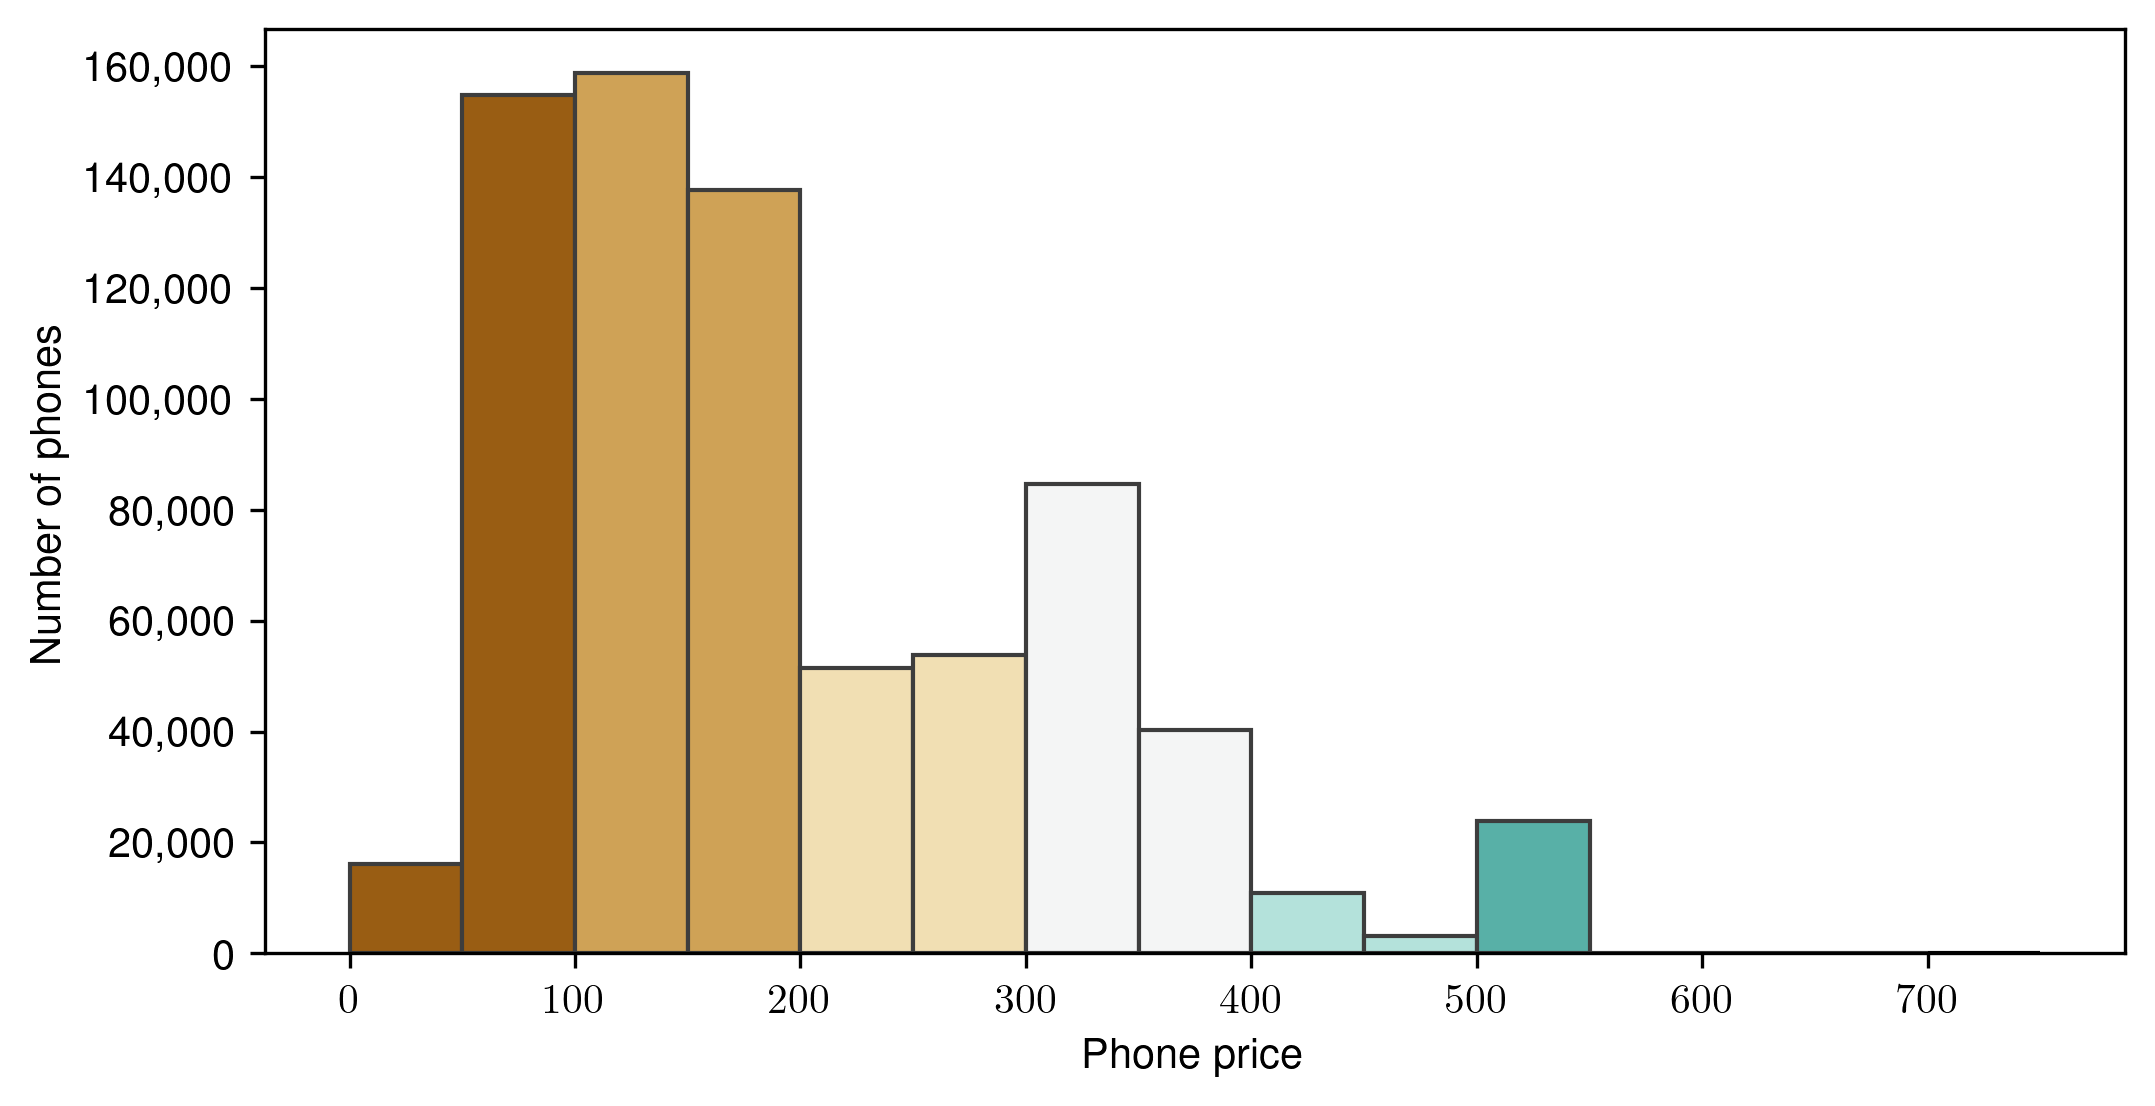 Phone price distribution.